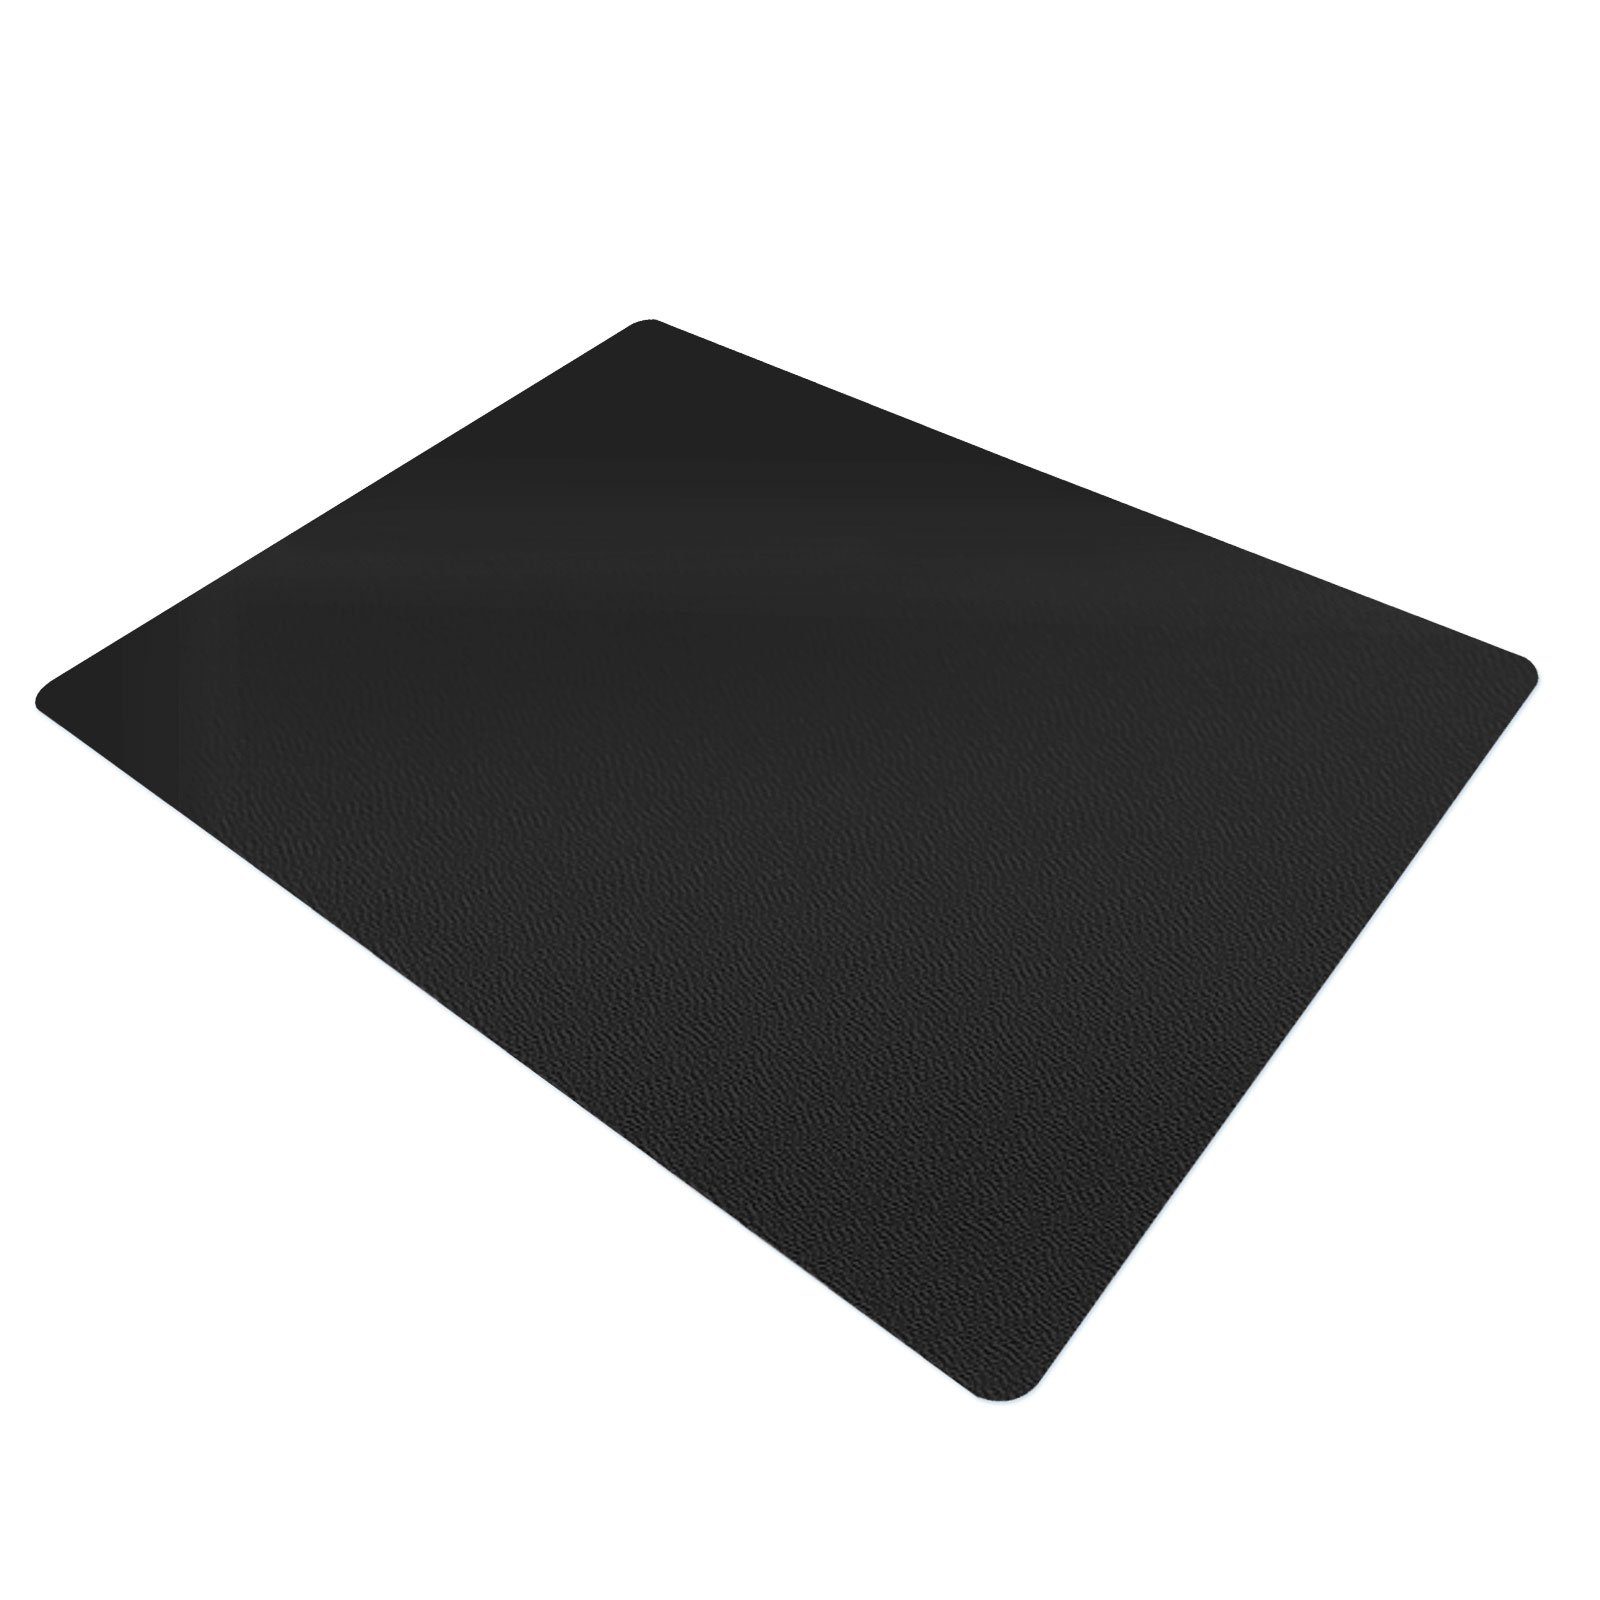 Karat Bodenschutzmatte für Hartböden Schwarz, Fußbodenheizung für Erhältlich Größen, in verschiedenen geeignet